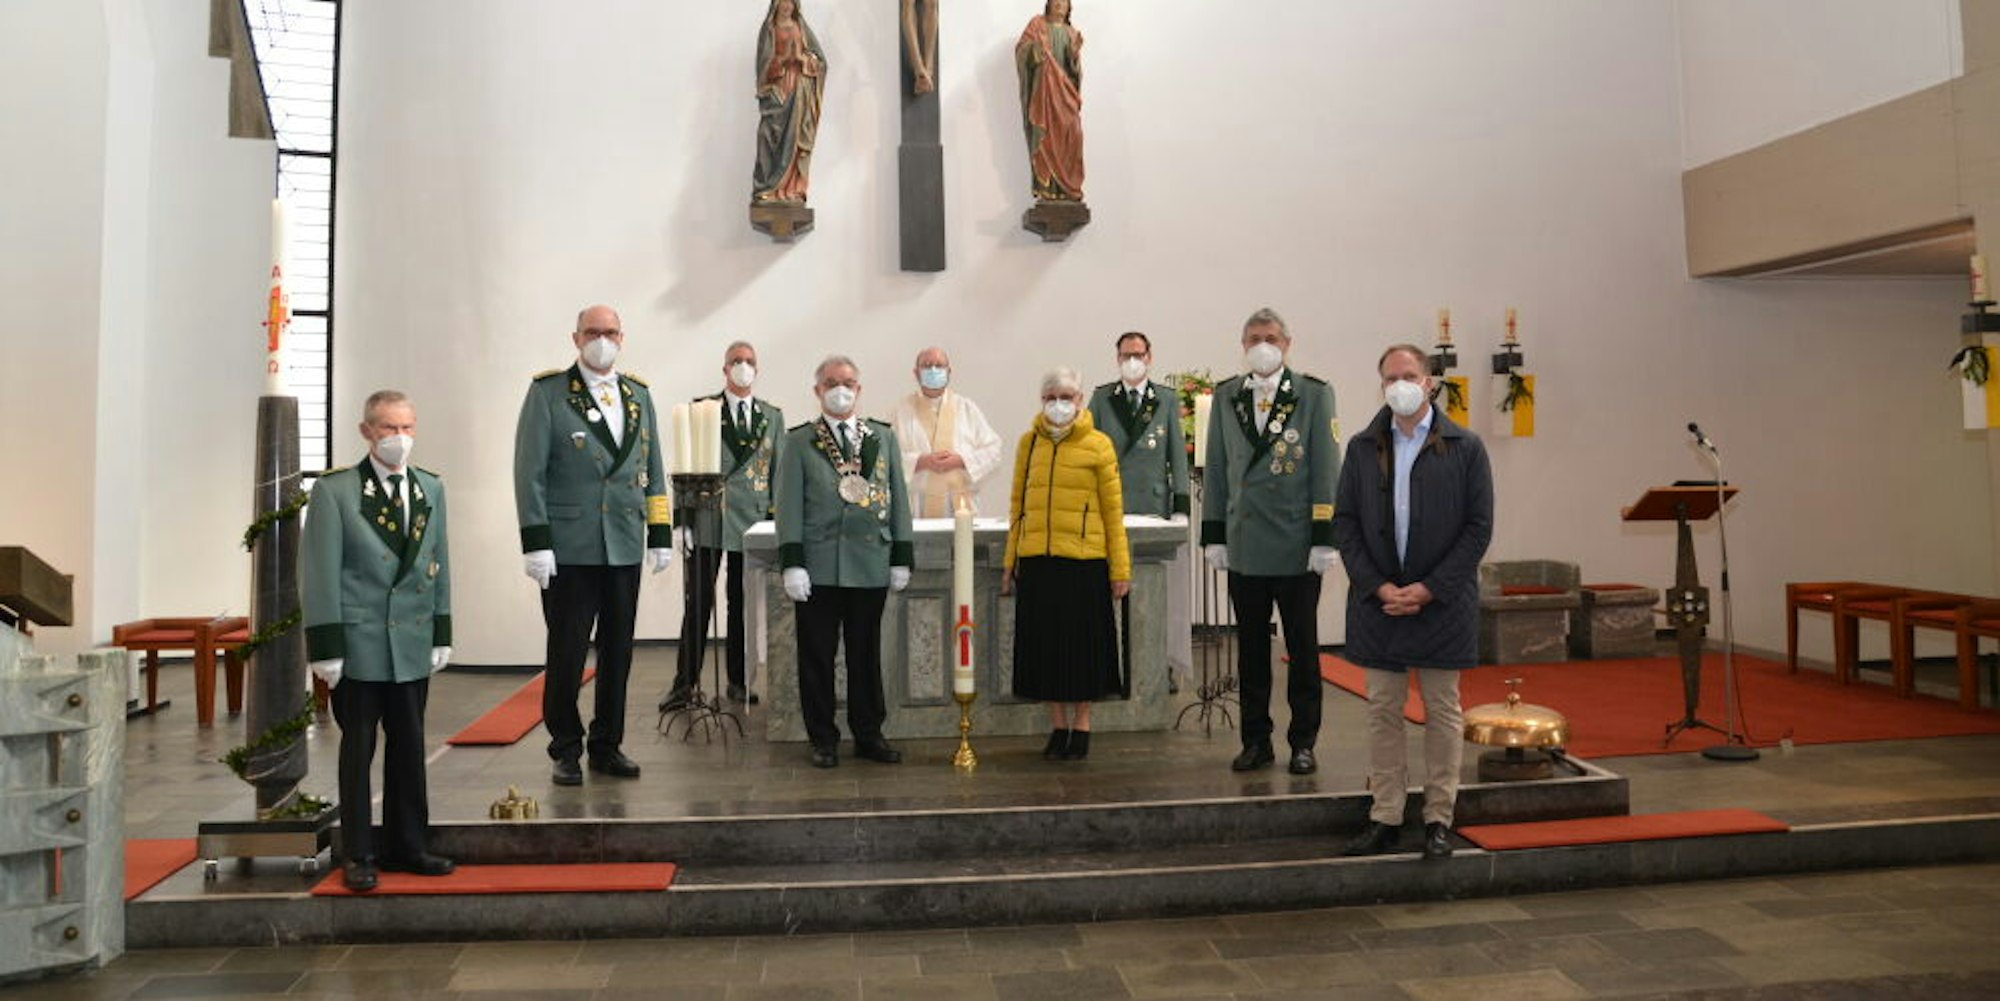 Eine Abordnung der St.-Hubertus-Schützenbruderschaft überreiche die Corona-Kerze während des Gottesdienstes an Pfarrvikar Werner Friesdorf. Der Geistliche segnete die Kerze.